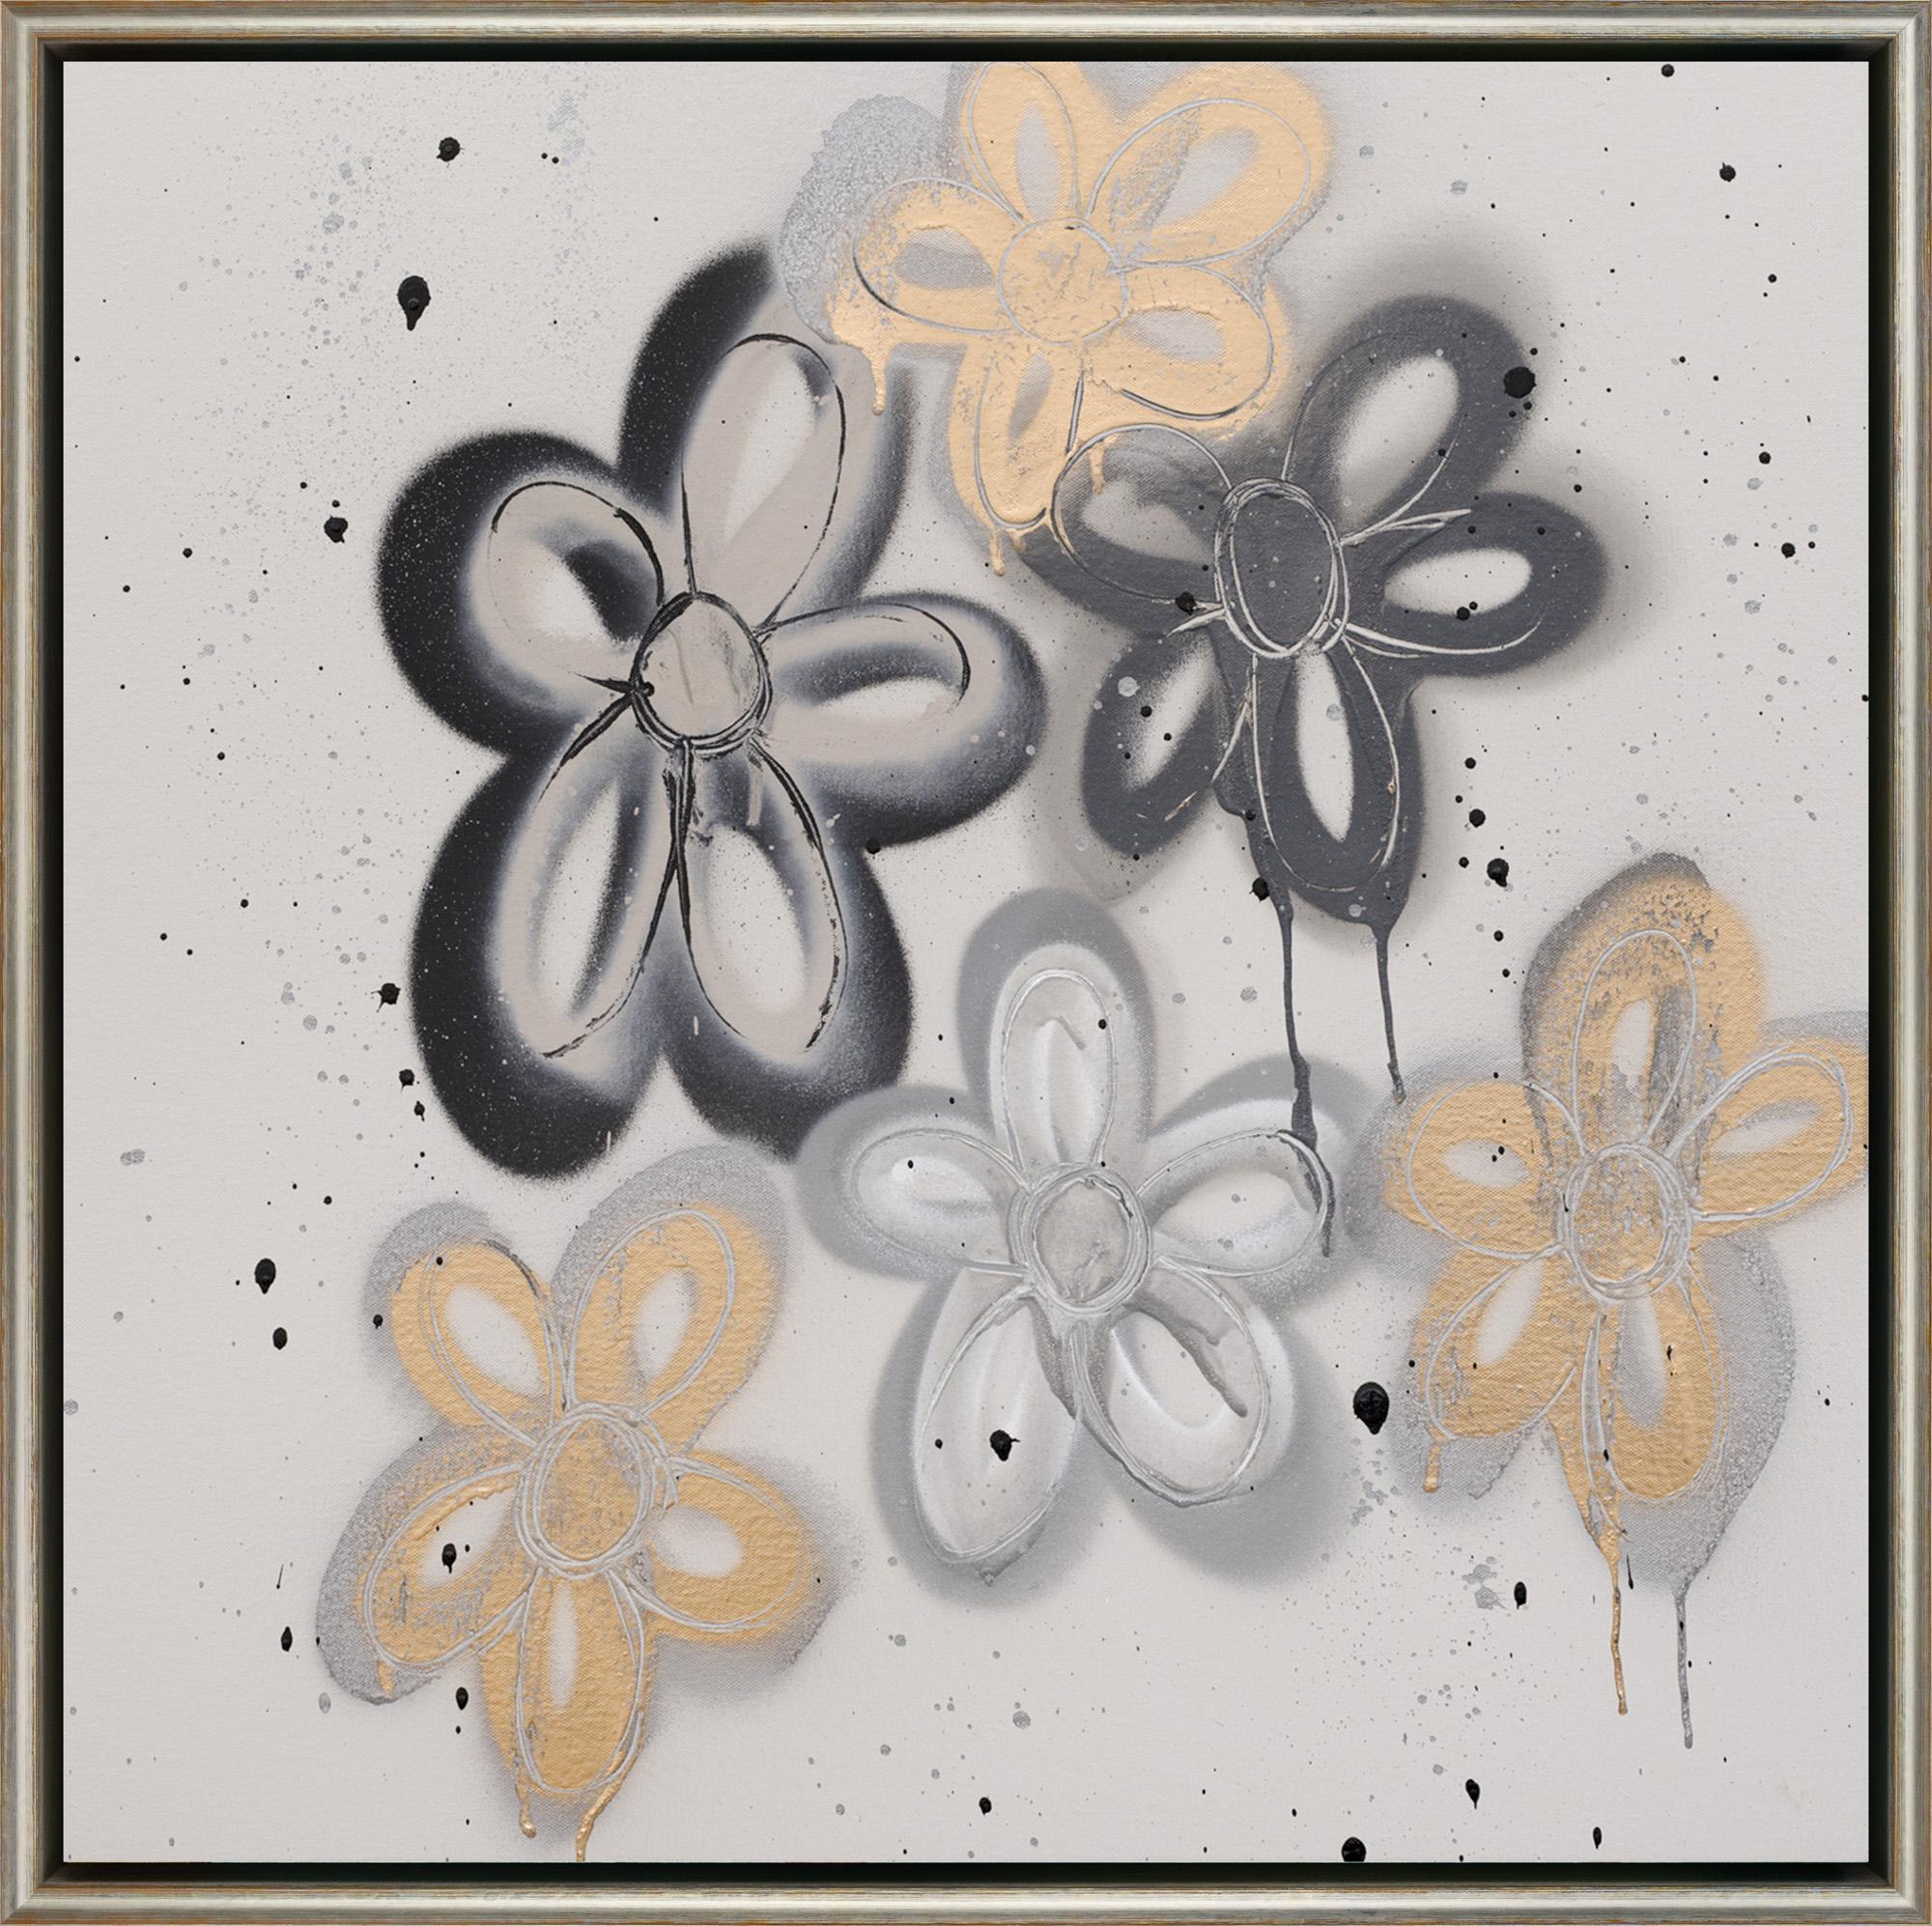 "Flower Nova" Zeitgenössische florale abstrakte gemischte Medien auf Leinwand gerahmte Malerei